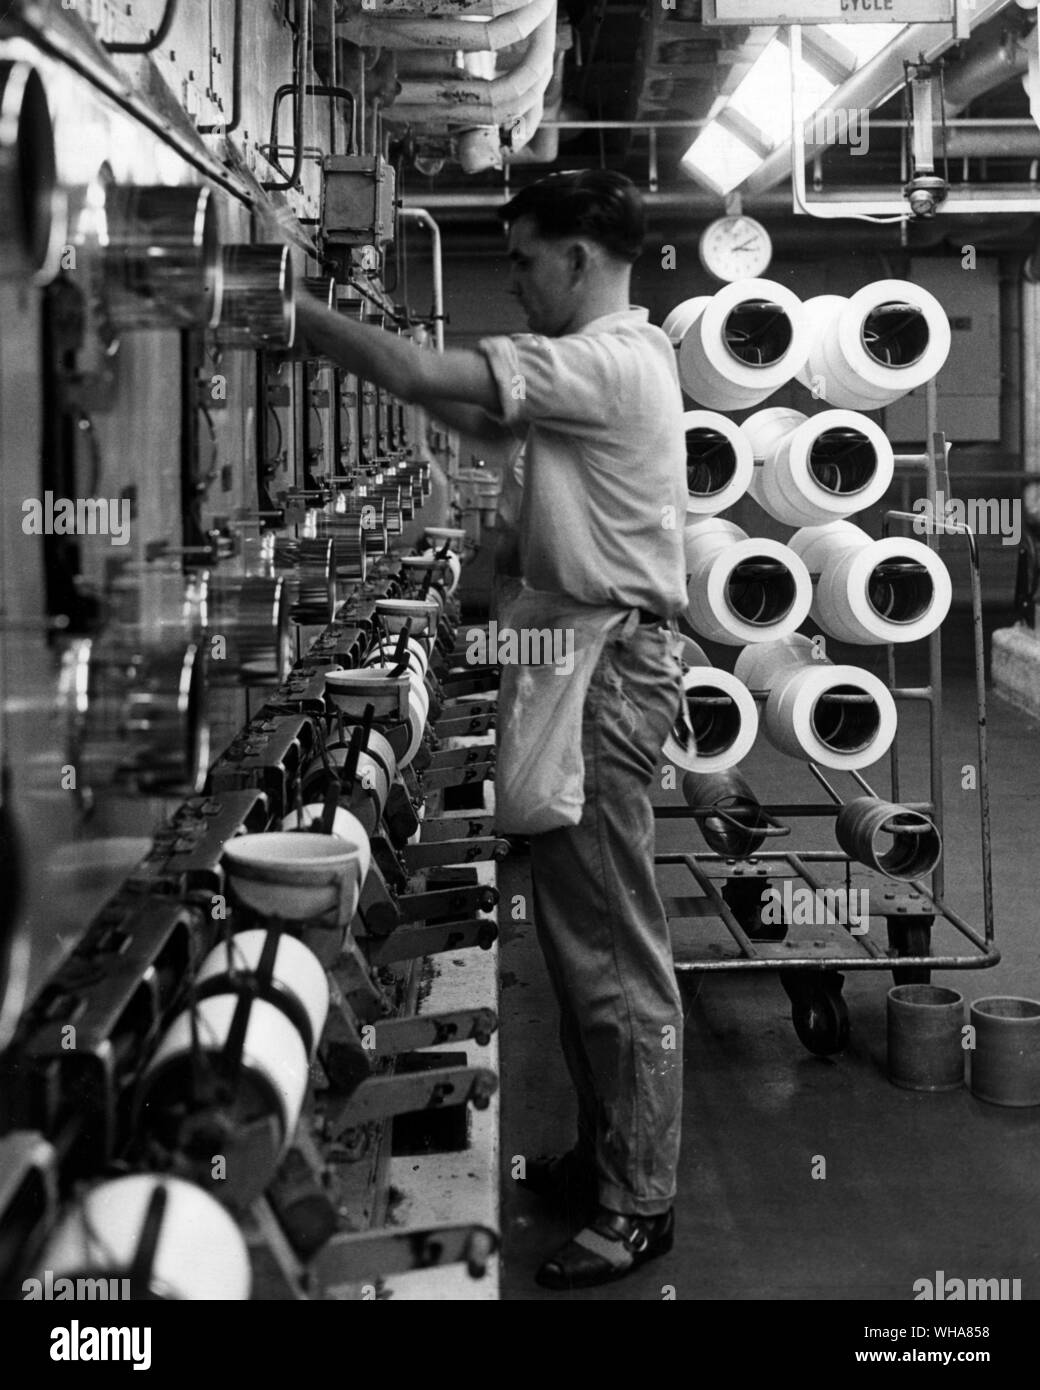 Primera etapa en la producción de hilo de nylon implica la fusión y extrusión de polímero a través de hileras. Las corrientes de aire fresco y solidificar el polímero extruido que se enrolla entonces en cilindros dispuestos para el frío dibujo y procesamiento posterior. Aquí algunas de las unidades giran en la planta principal en el BNS sede en Pontypool Monmouthshire. Nylon británico Spinners Ltd. Foto de stock